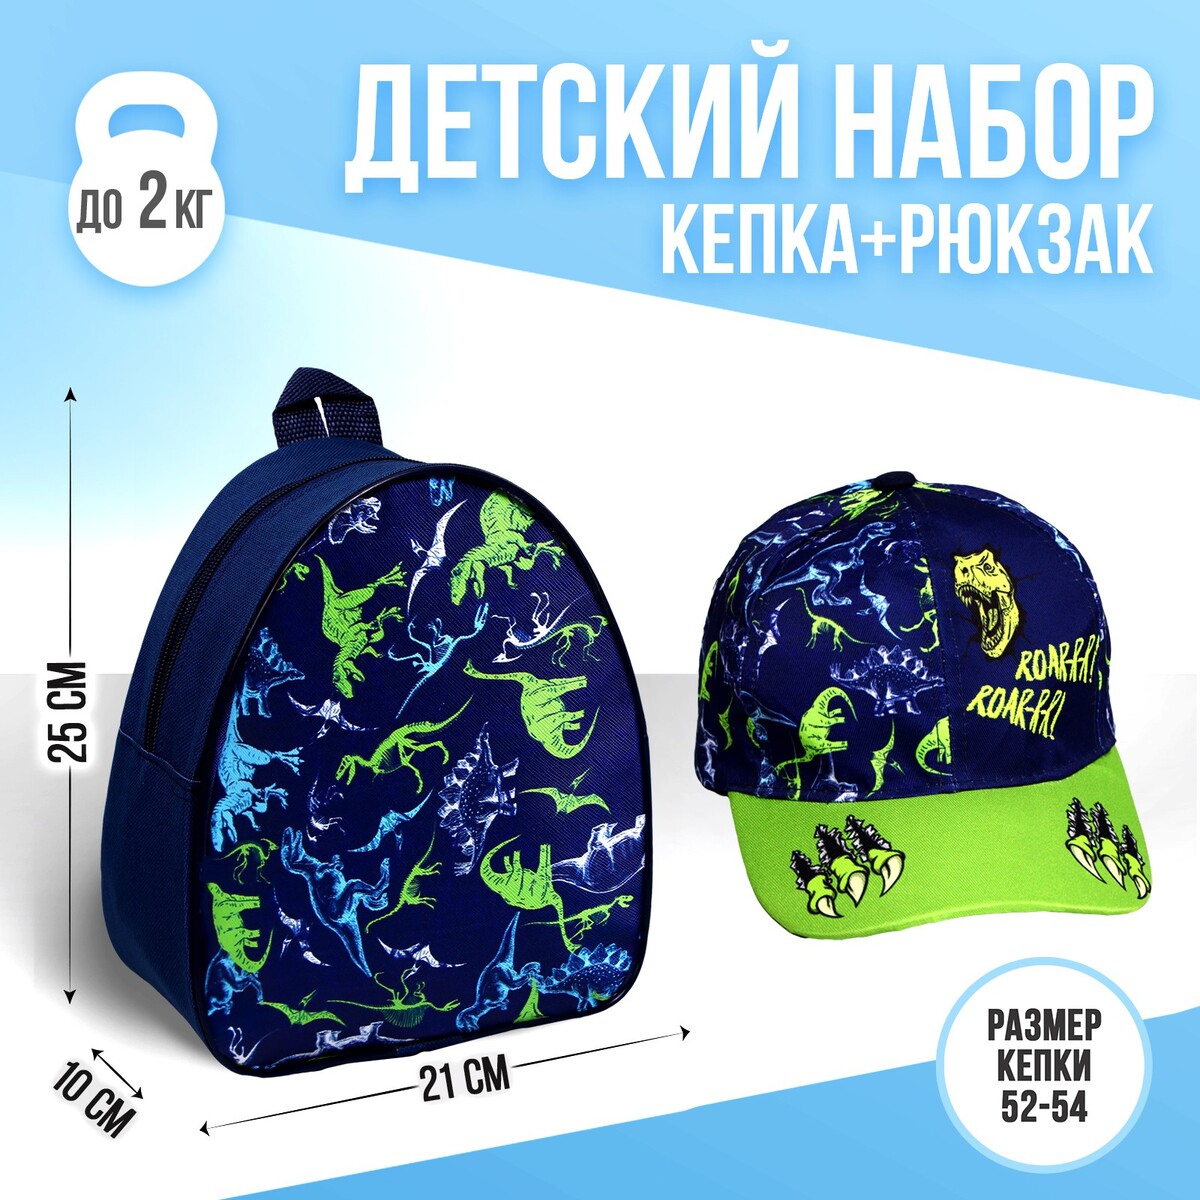 Детский набор roar, рюкзак, кепка кепка велосипедная rockbros спортивная дышащий материал m005bk